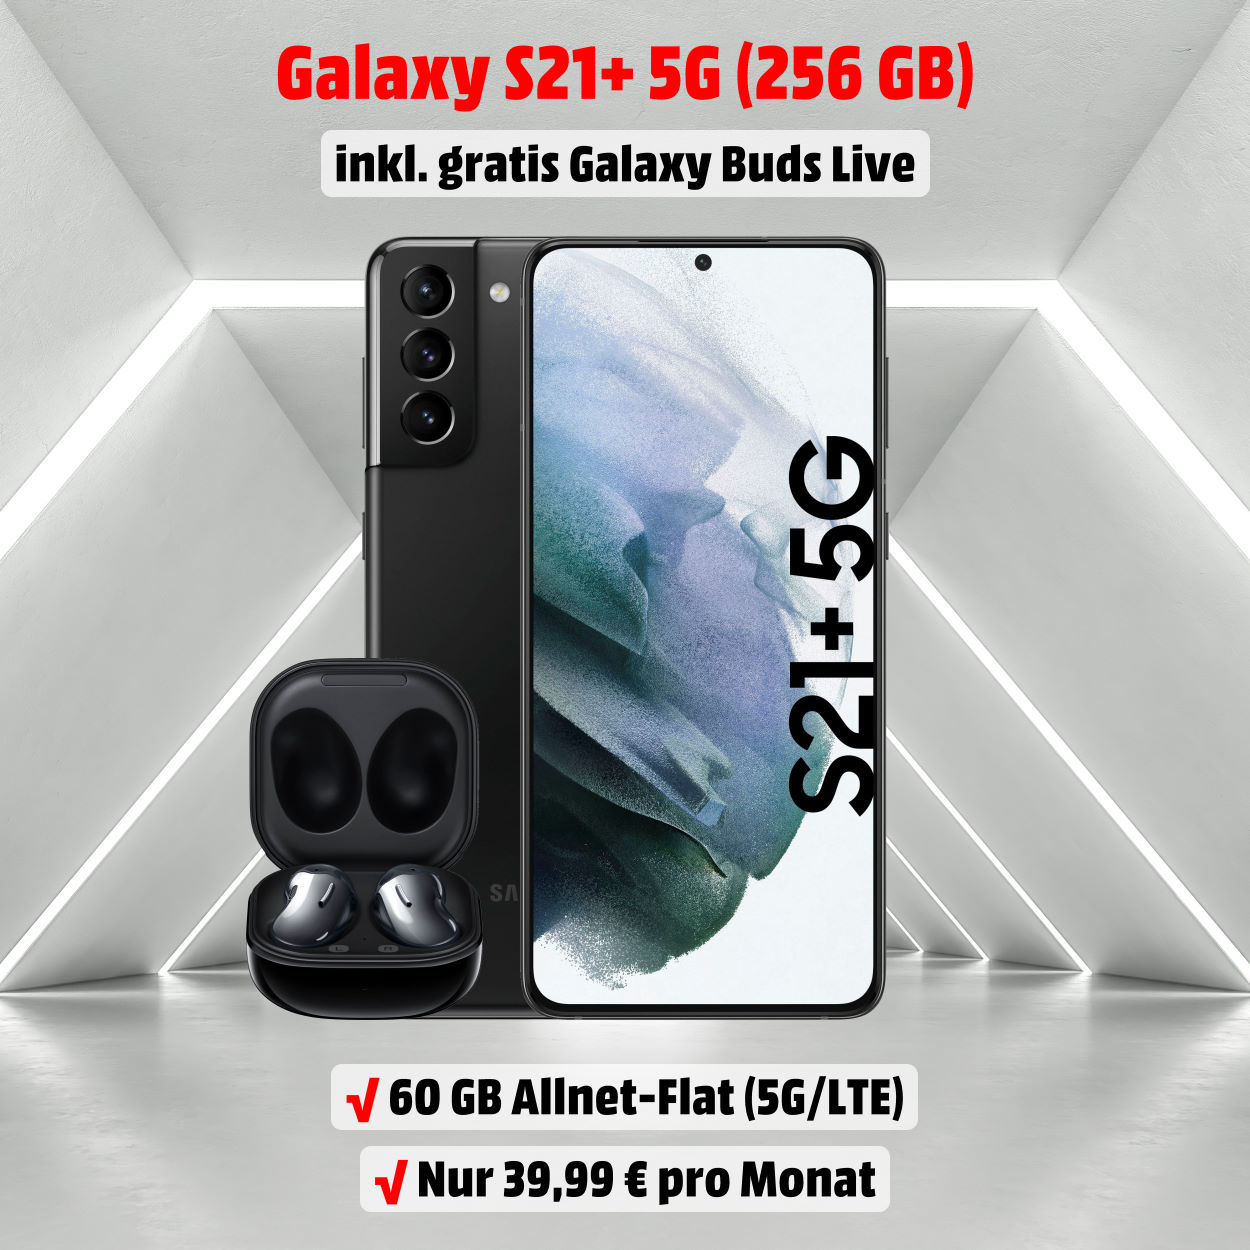 Galaxy S21+ mit 256 GB inkl. Galaxy Buds Live und 60 GB 5G-LTE Allnet-Flat zum absoluten Bestpreis